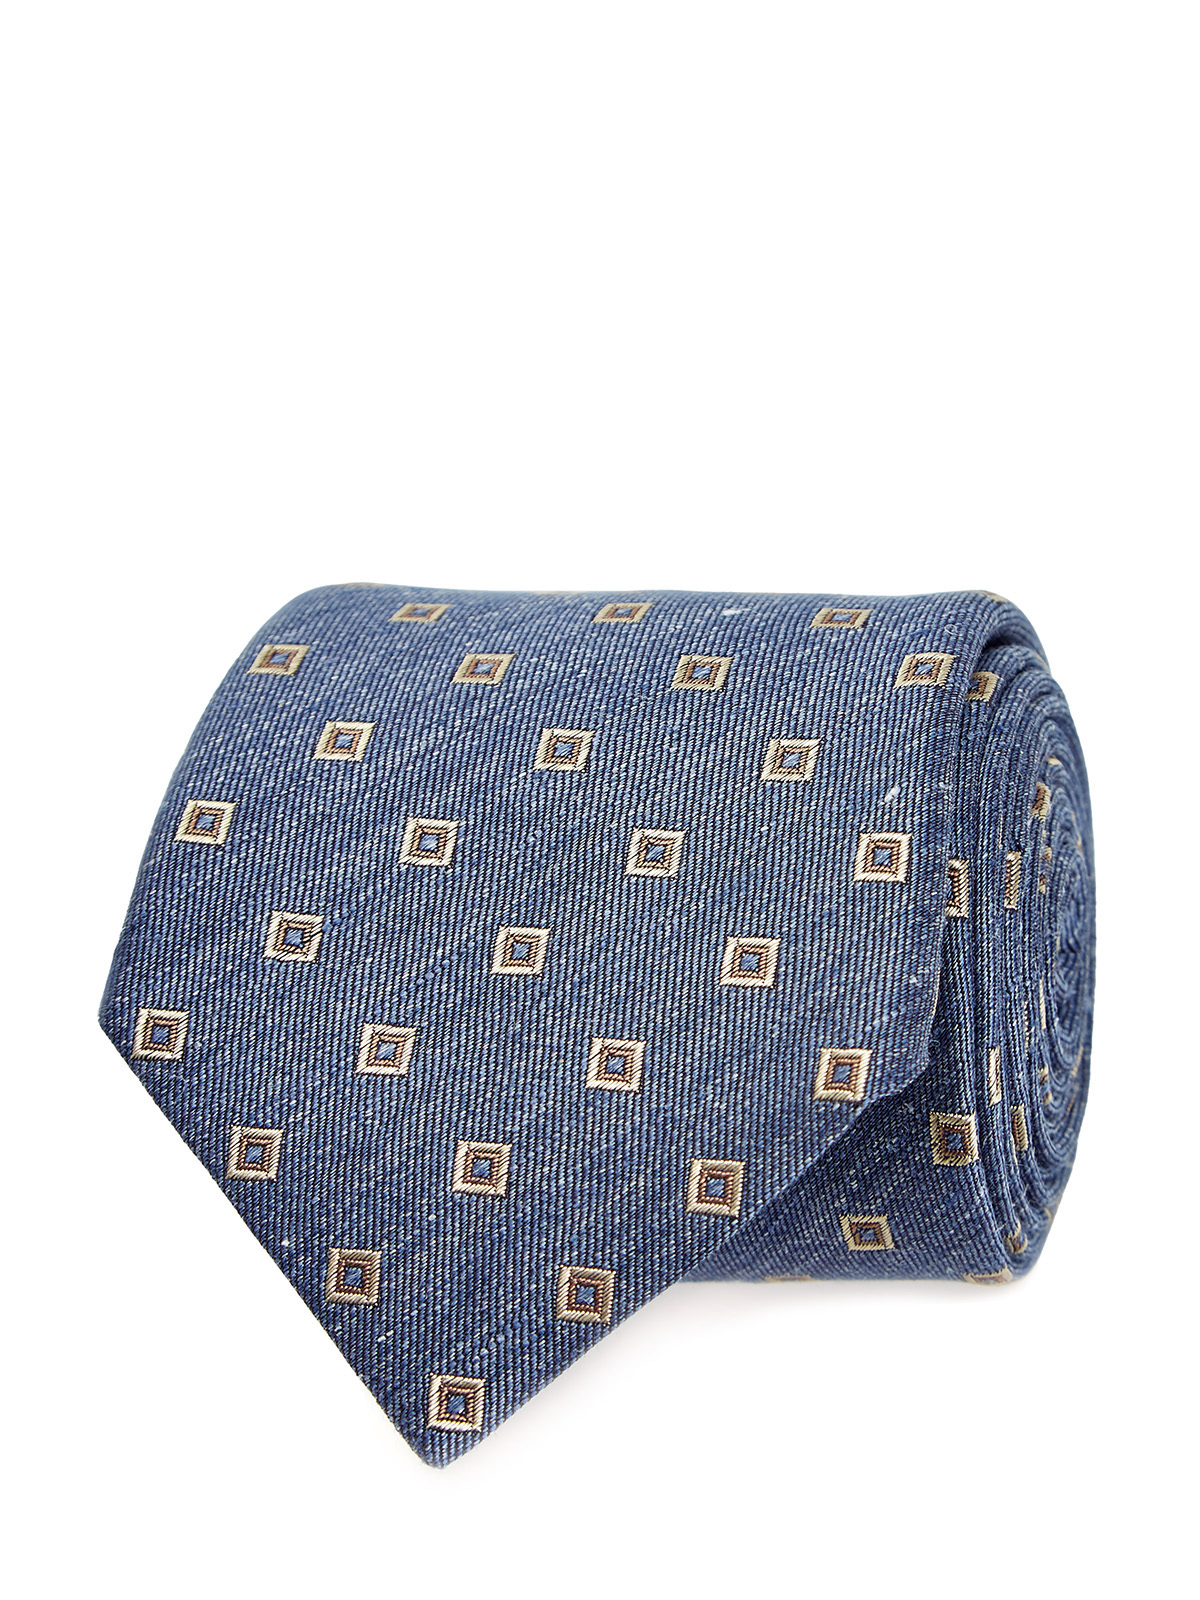 Шелковый галстук с вышитым жаккардовым узором CANALI, цвет голубой, размер 36.5;37;37.5;38;38.5;39.5;39